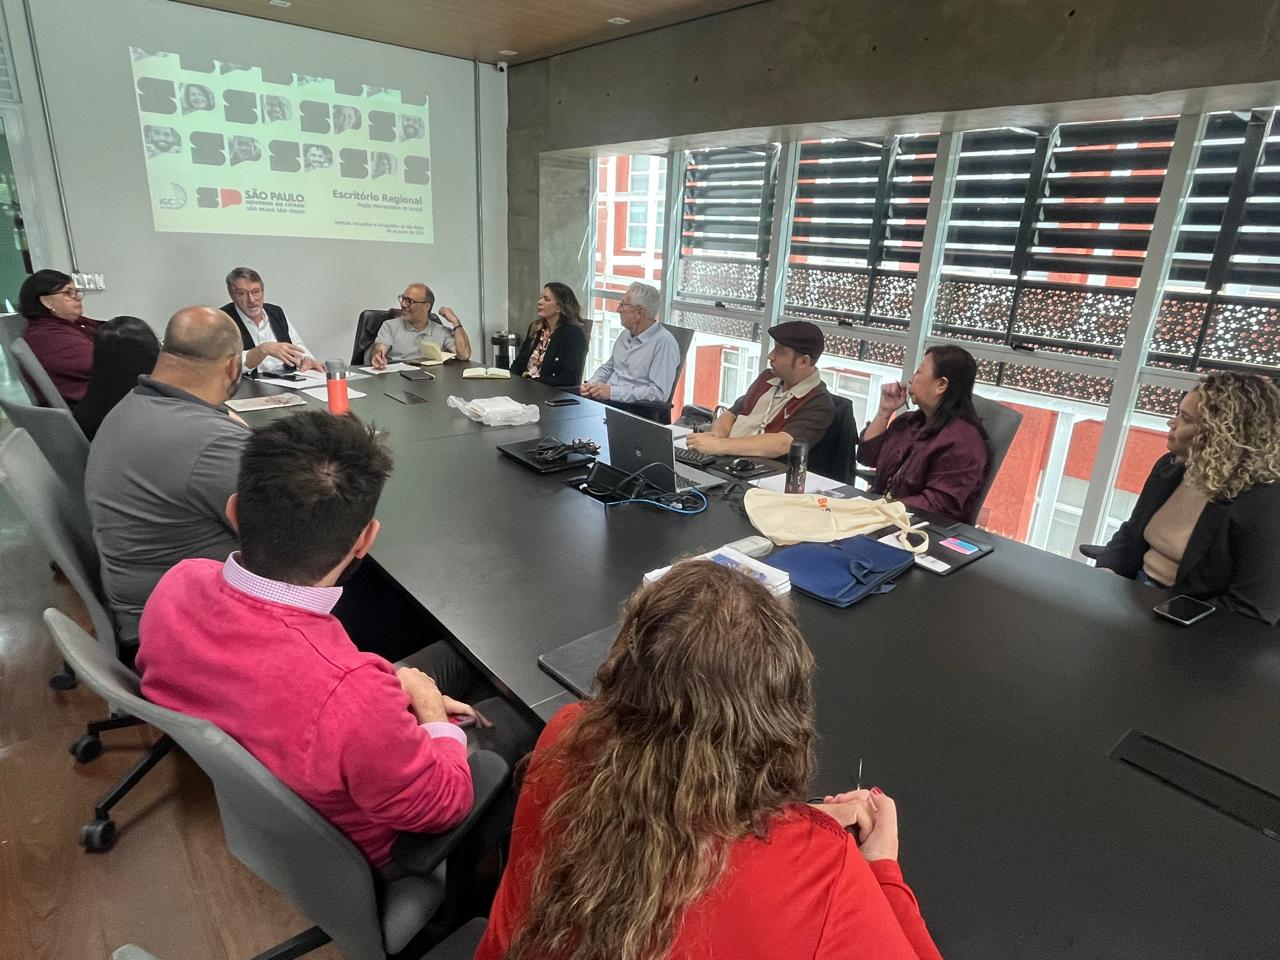 Reunião no Escritório de Projetos da Região Metropolitana de Jundiaí, com 11 pessoas sentadas ao redor de uma mesa grande, discutindo sobre projetos regionais de São Paulo.